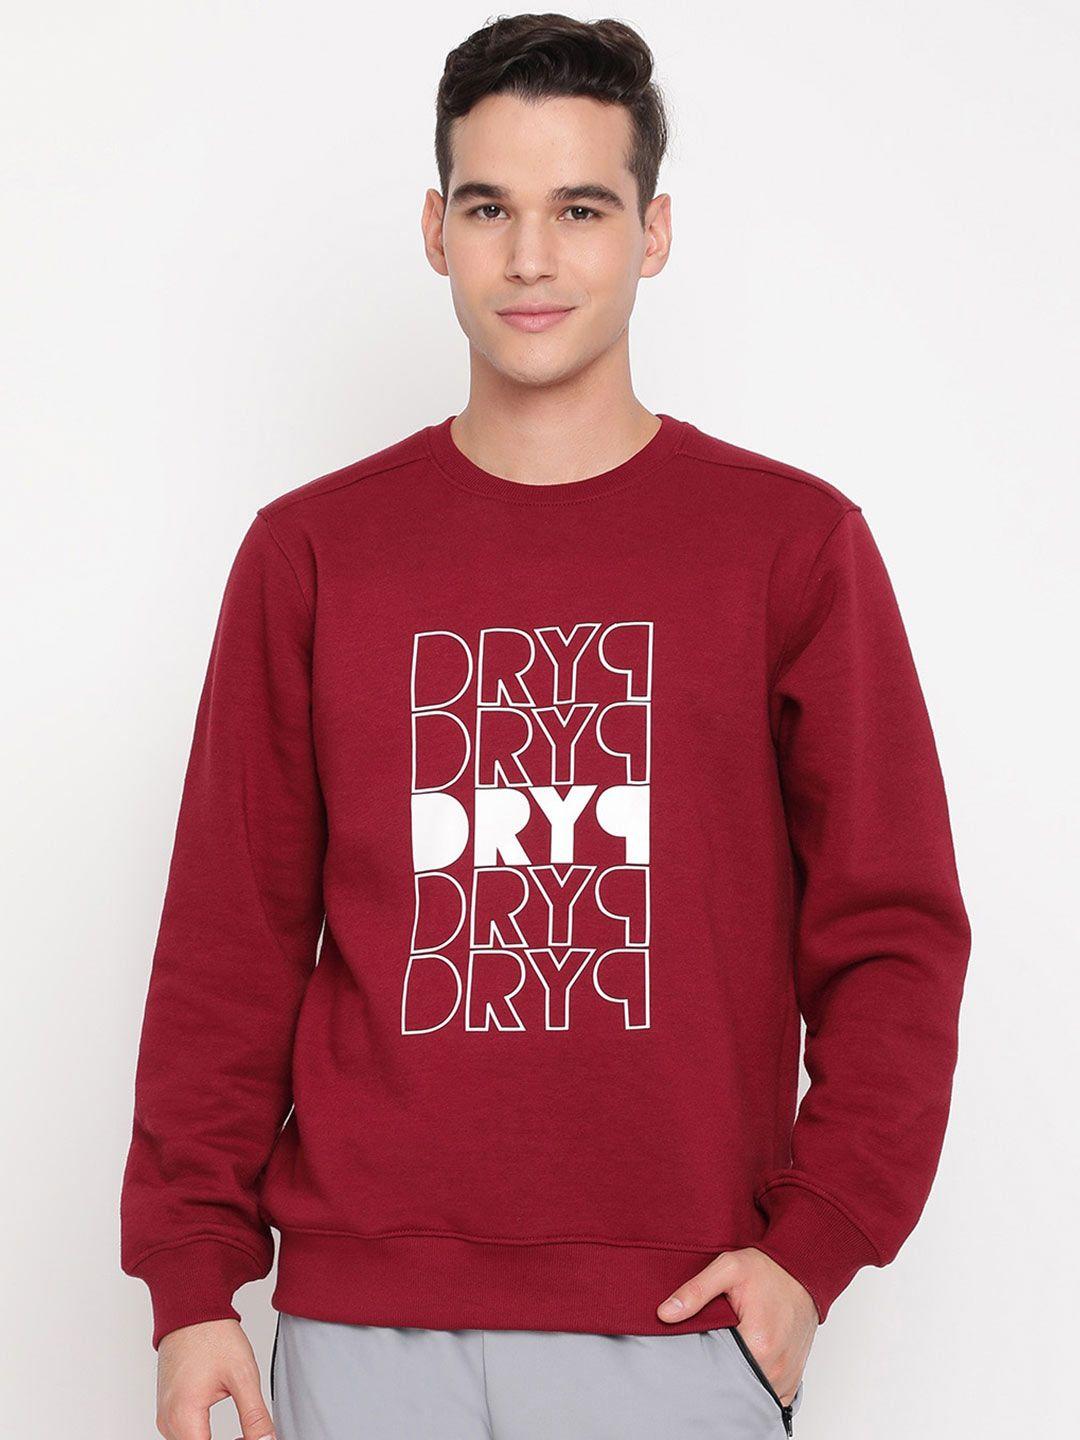 dryp evolut maroon printed sweatshirt